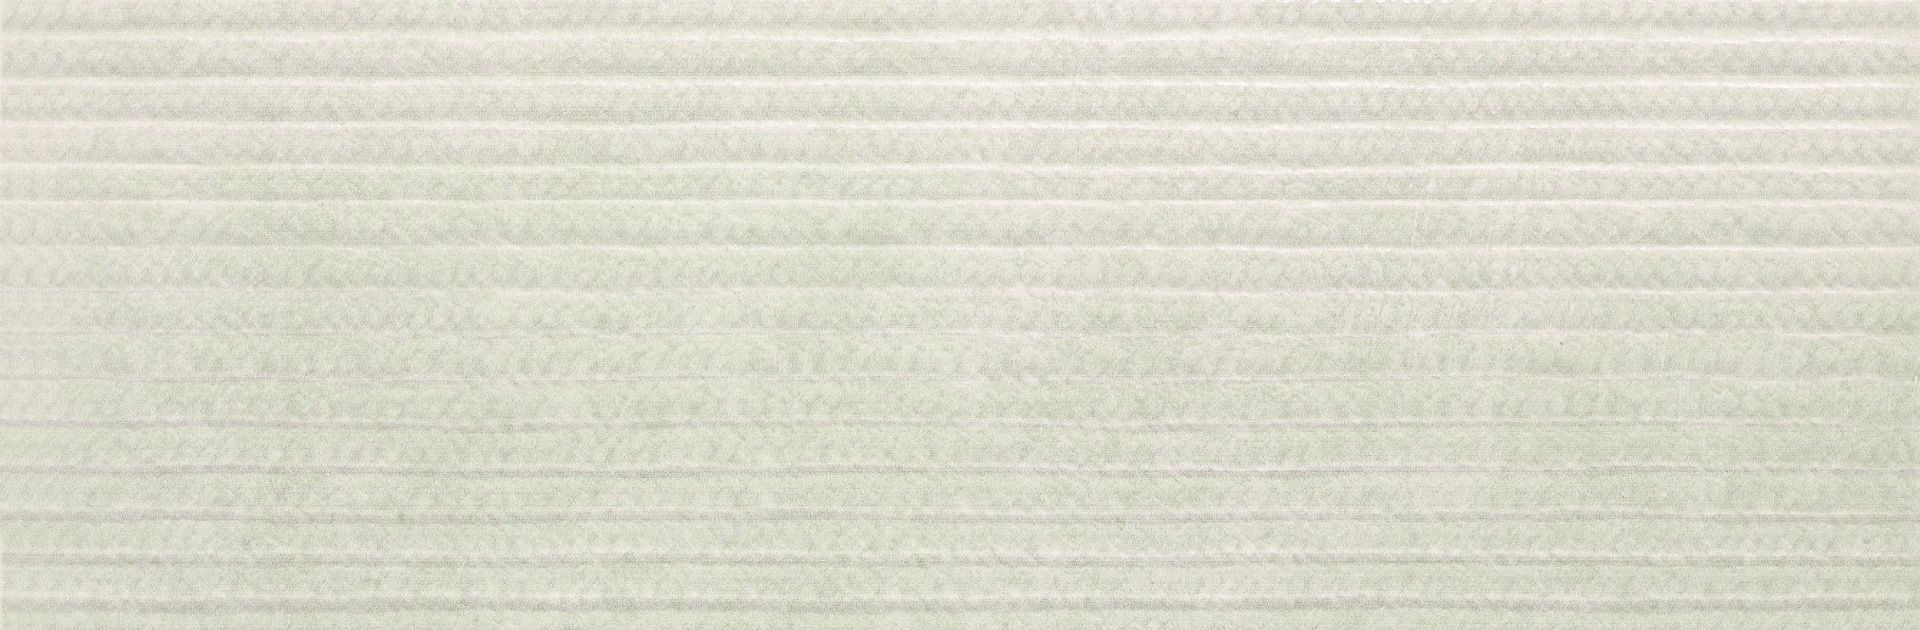 Керамическая плитка Decor Lipsia Gris для стен 20x60